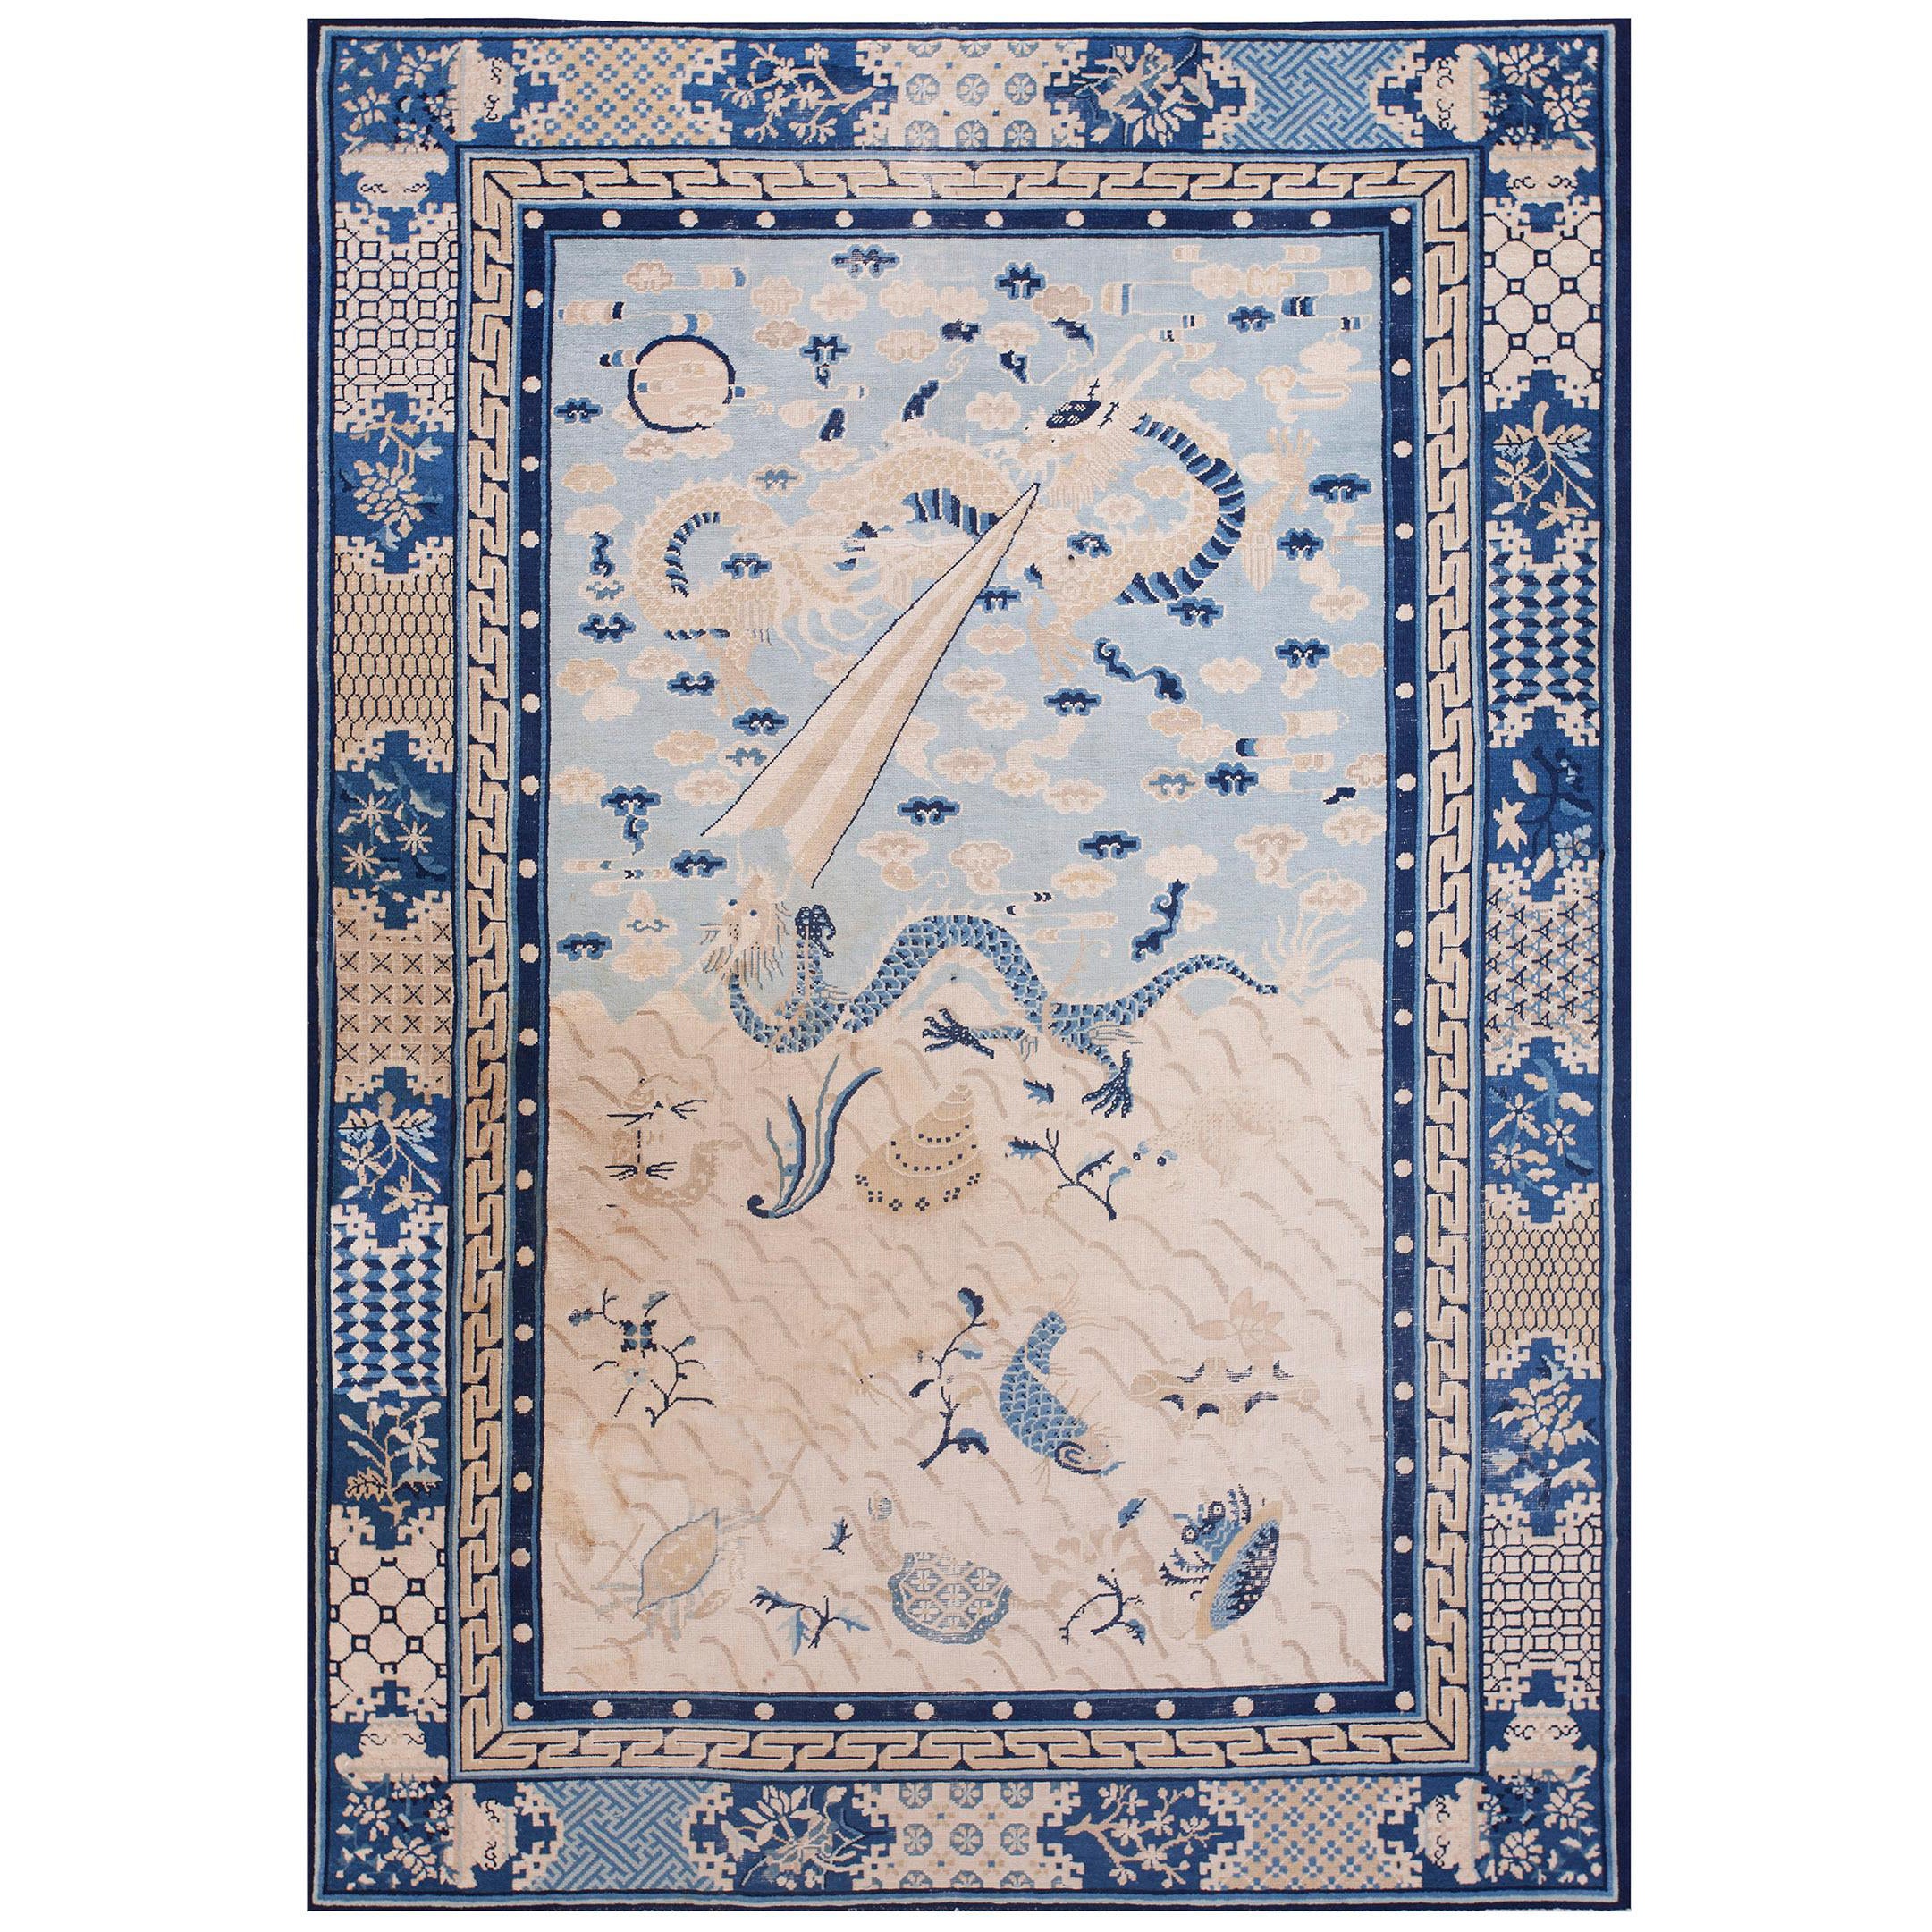 19th Century Chinese Peking Dragon Carpet ( 6' x 8'8" - 183 x 265 )